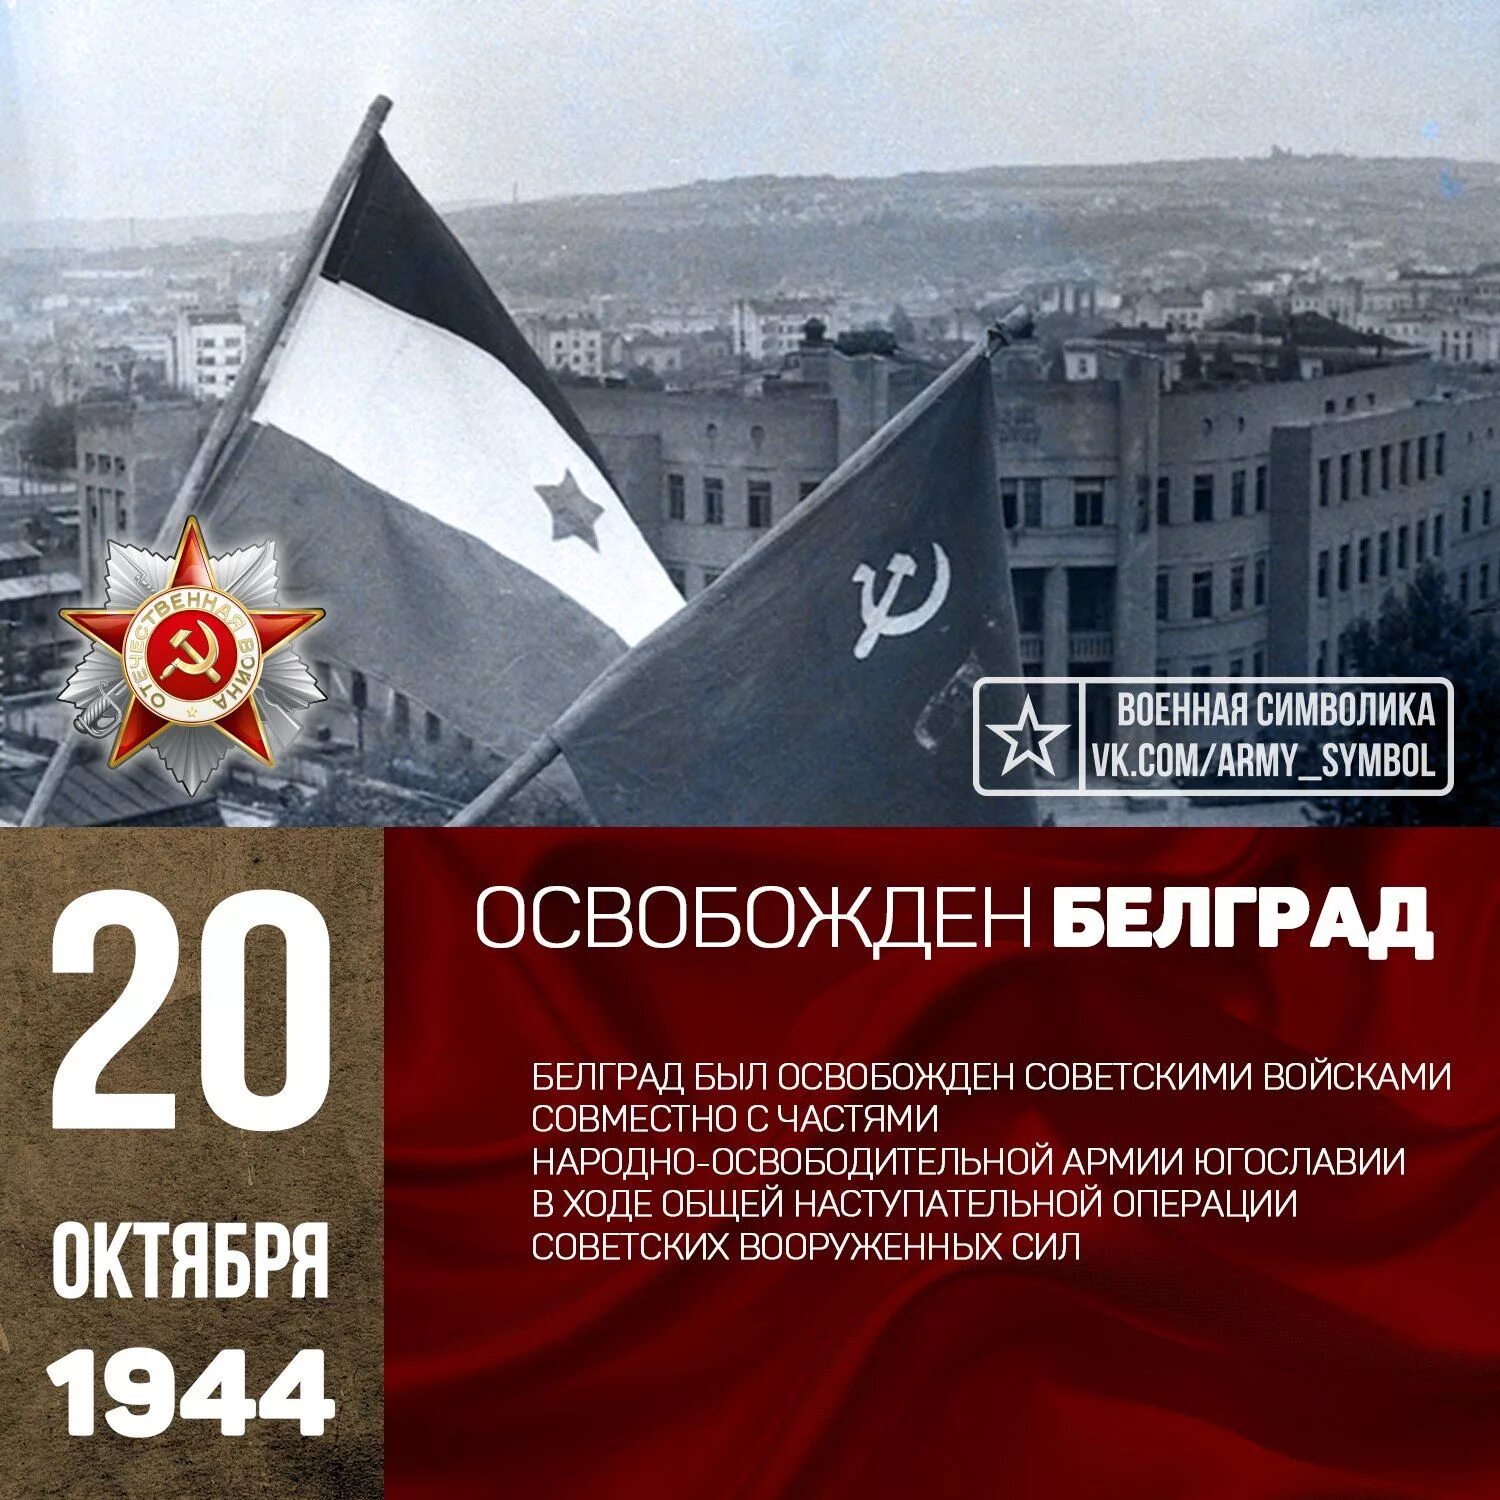 Октябрь 20 21. Освобождение Югославии 1944 операция. Освобождение Белграда, октябрь 1944 года. 20 Октября день освобождения Белграда. Советские войска освободили Белград.